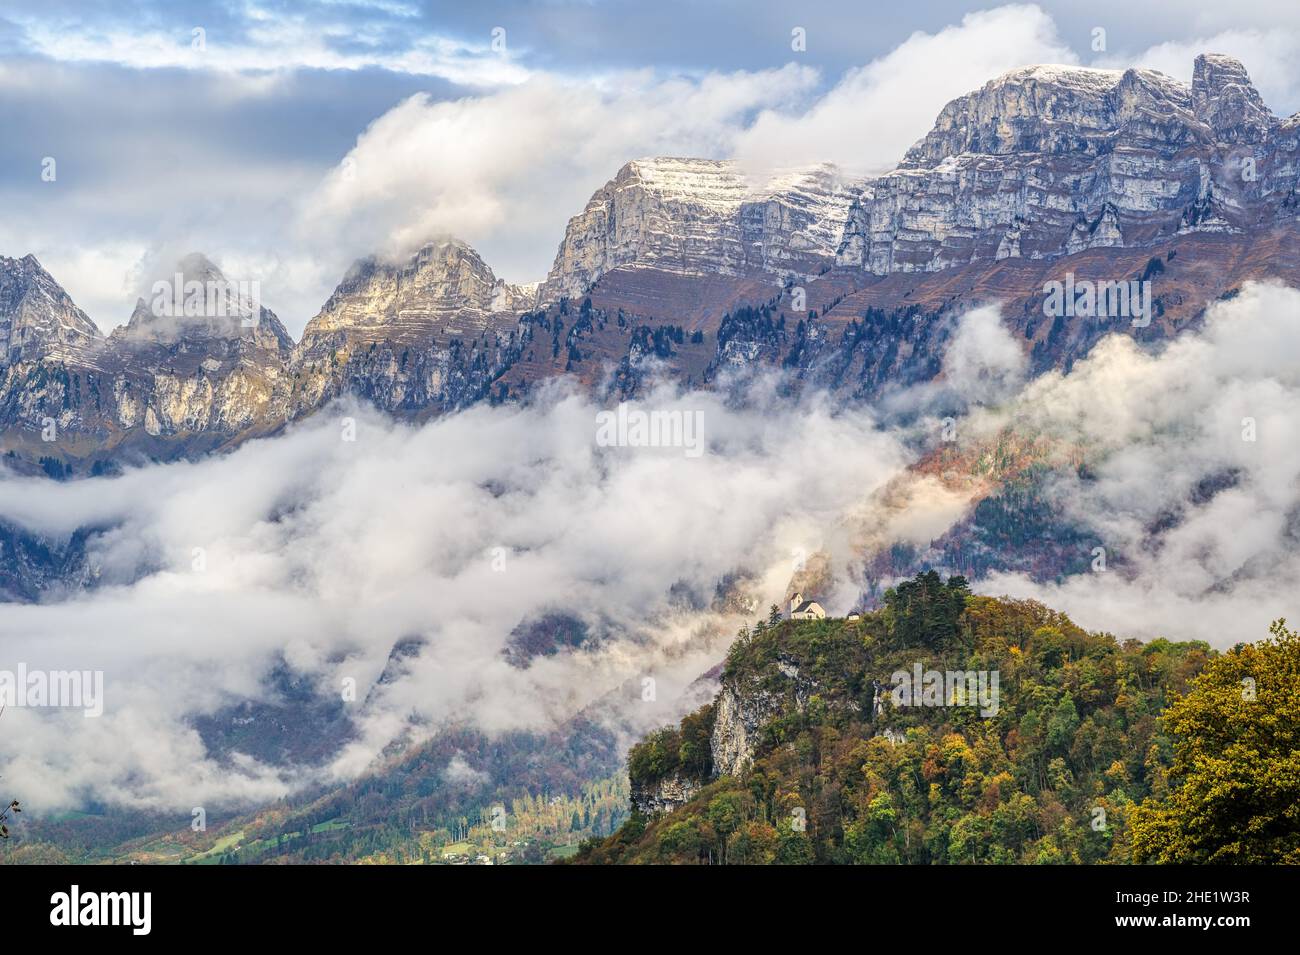 La catena montuosa Churfirsten nelle Alpi svizzere, Canton San Gallo, Svizzera Foto Stock